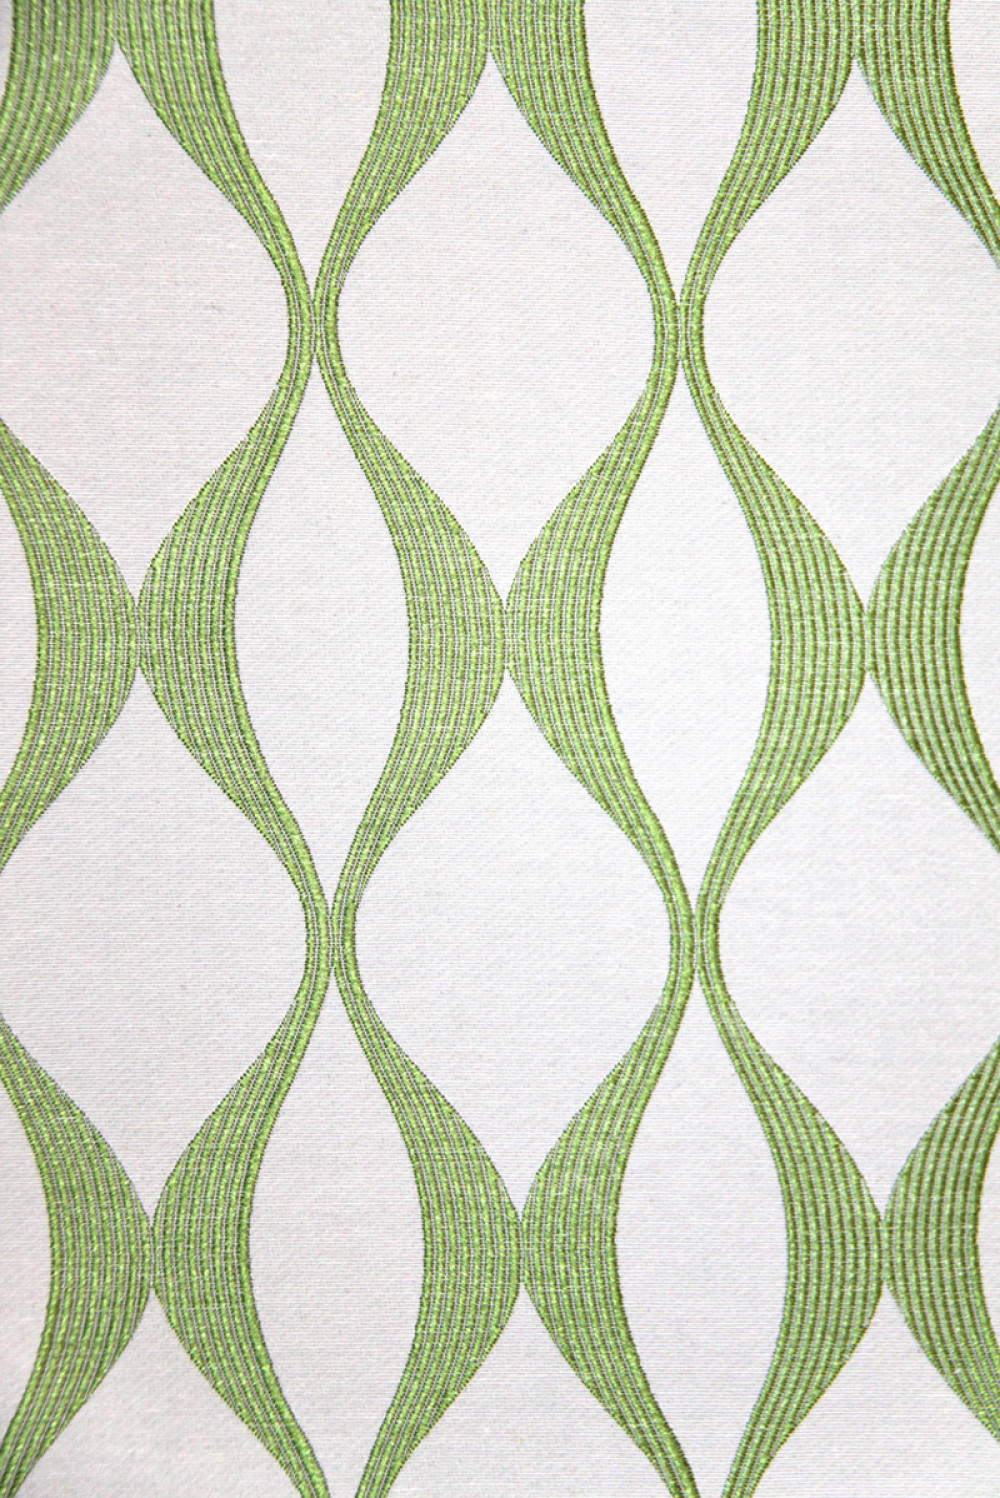 Ткань для штор SUNRUSE UDAIPUR зеленый геометрический узор на белом фоне (раппорт 9х16см)